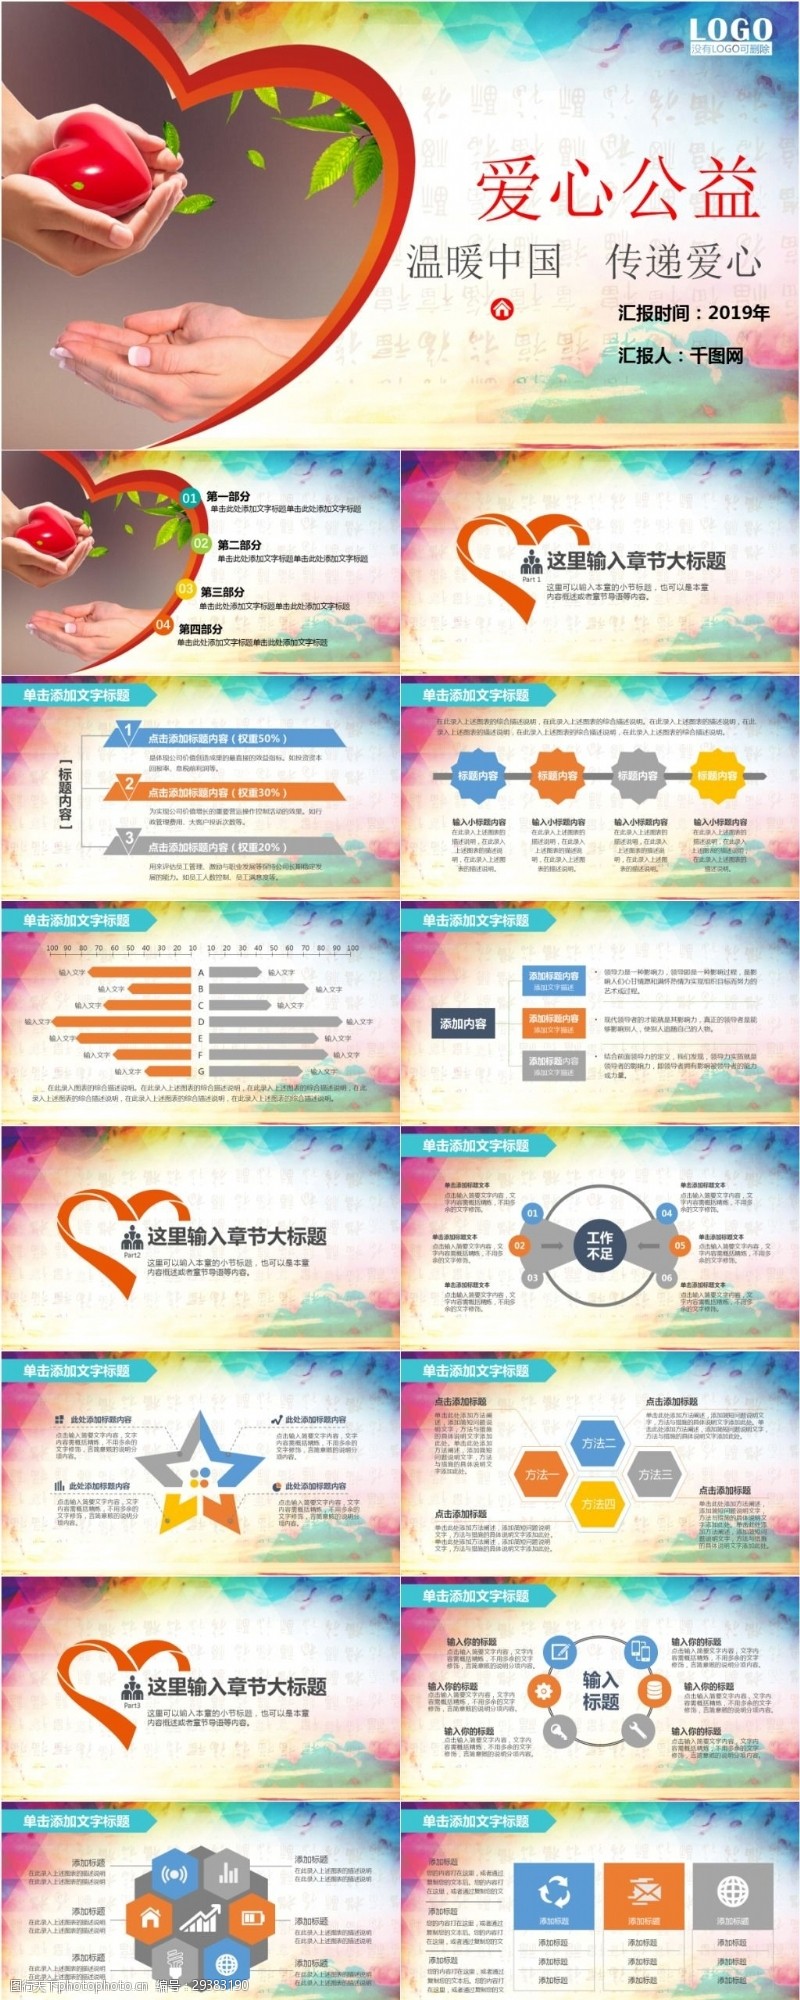 儿童模板免费下载中国传递爱心关爱留守儿童公益宣传PPT模板免费下载